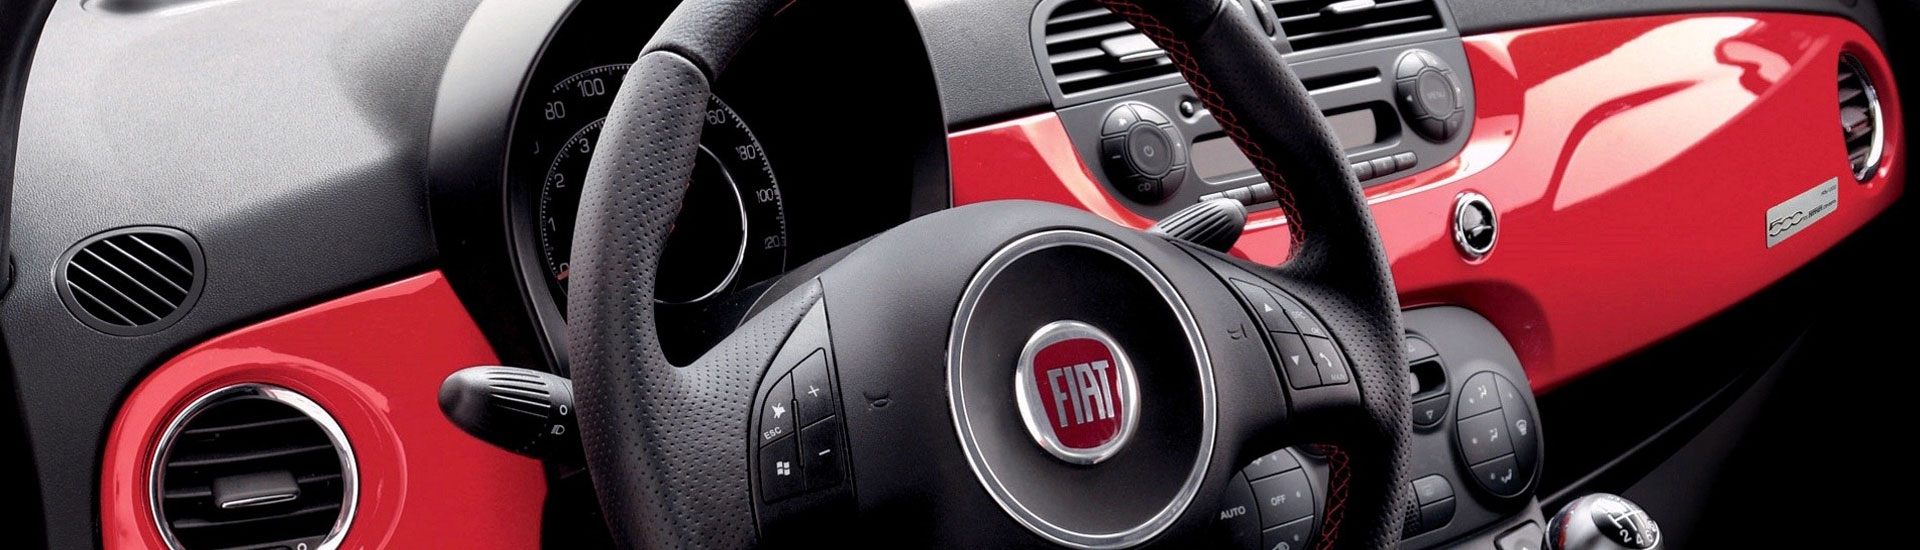 2017 Fiat 500L Custom Dash Kits